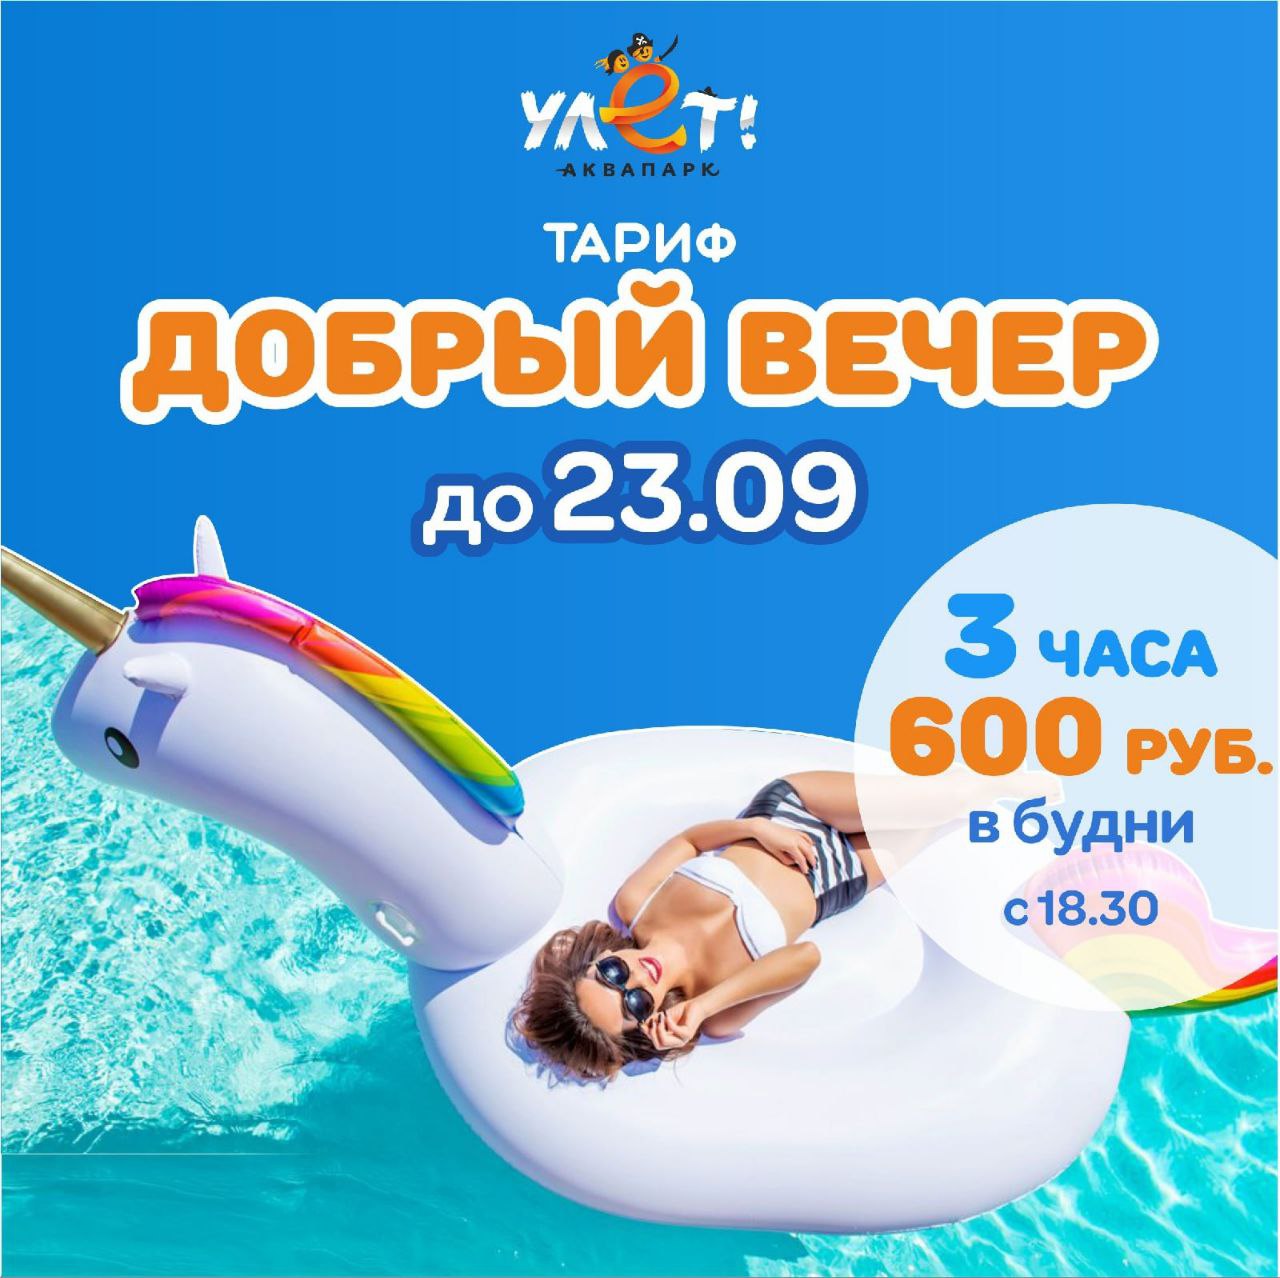 аквапарк ульяновск официальный сайт фото